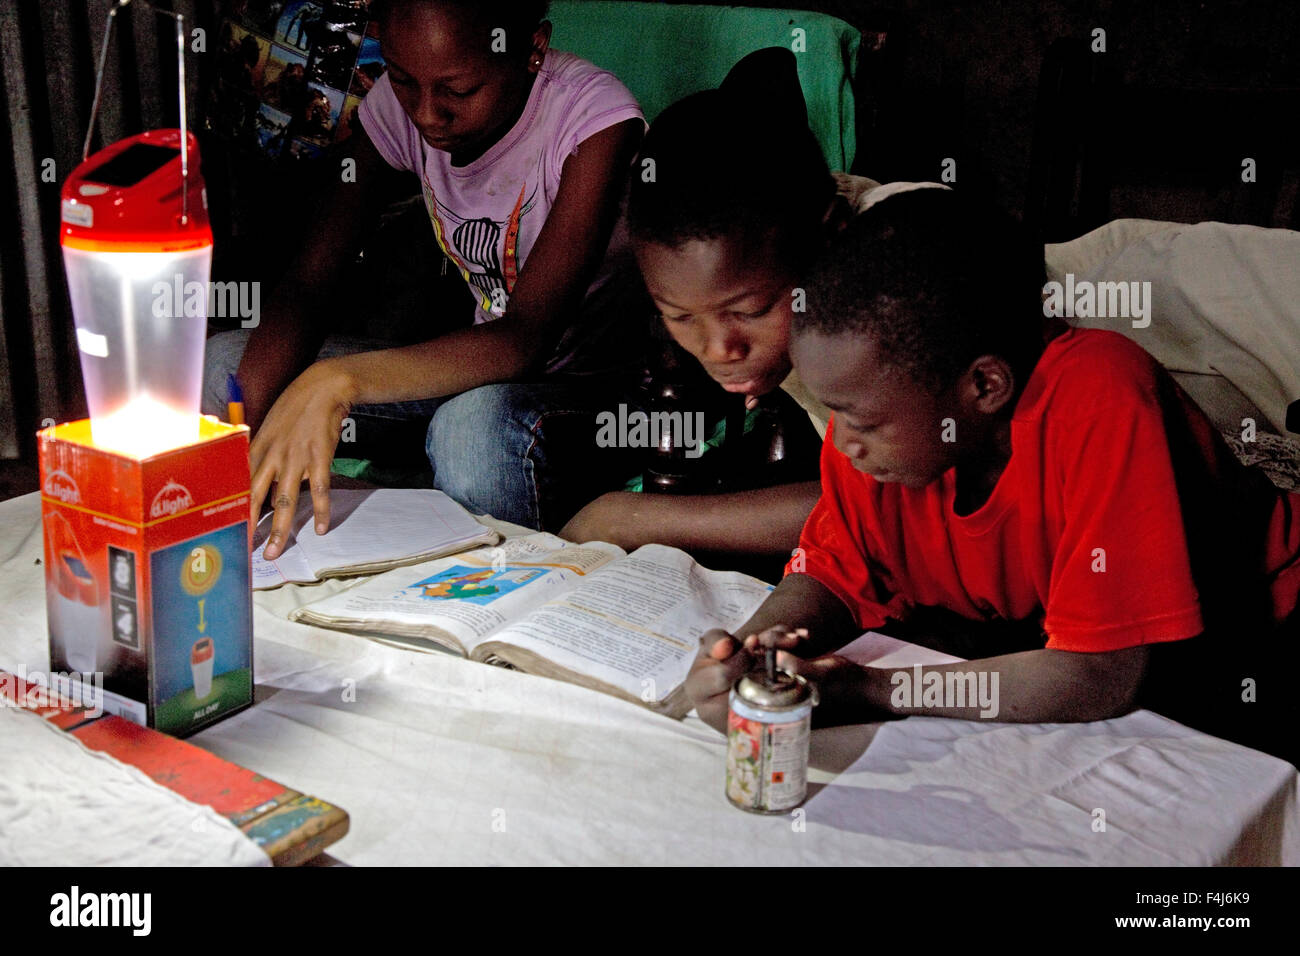 Les enfants de l'Afrique de l'étude de l'école livre avec lumière solaire Kamere Lake Naivasha au Kenya Banque D'Images